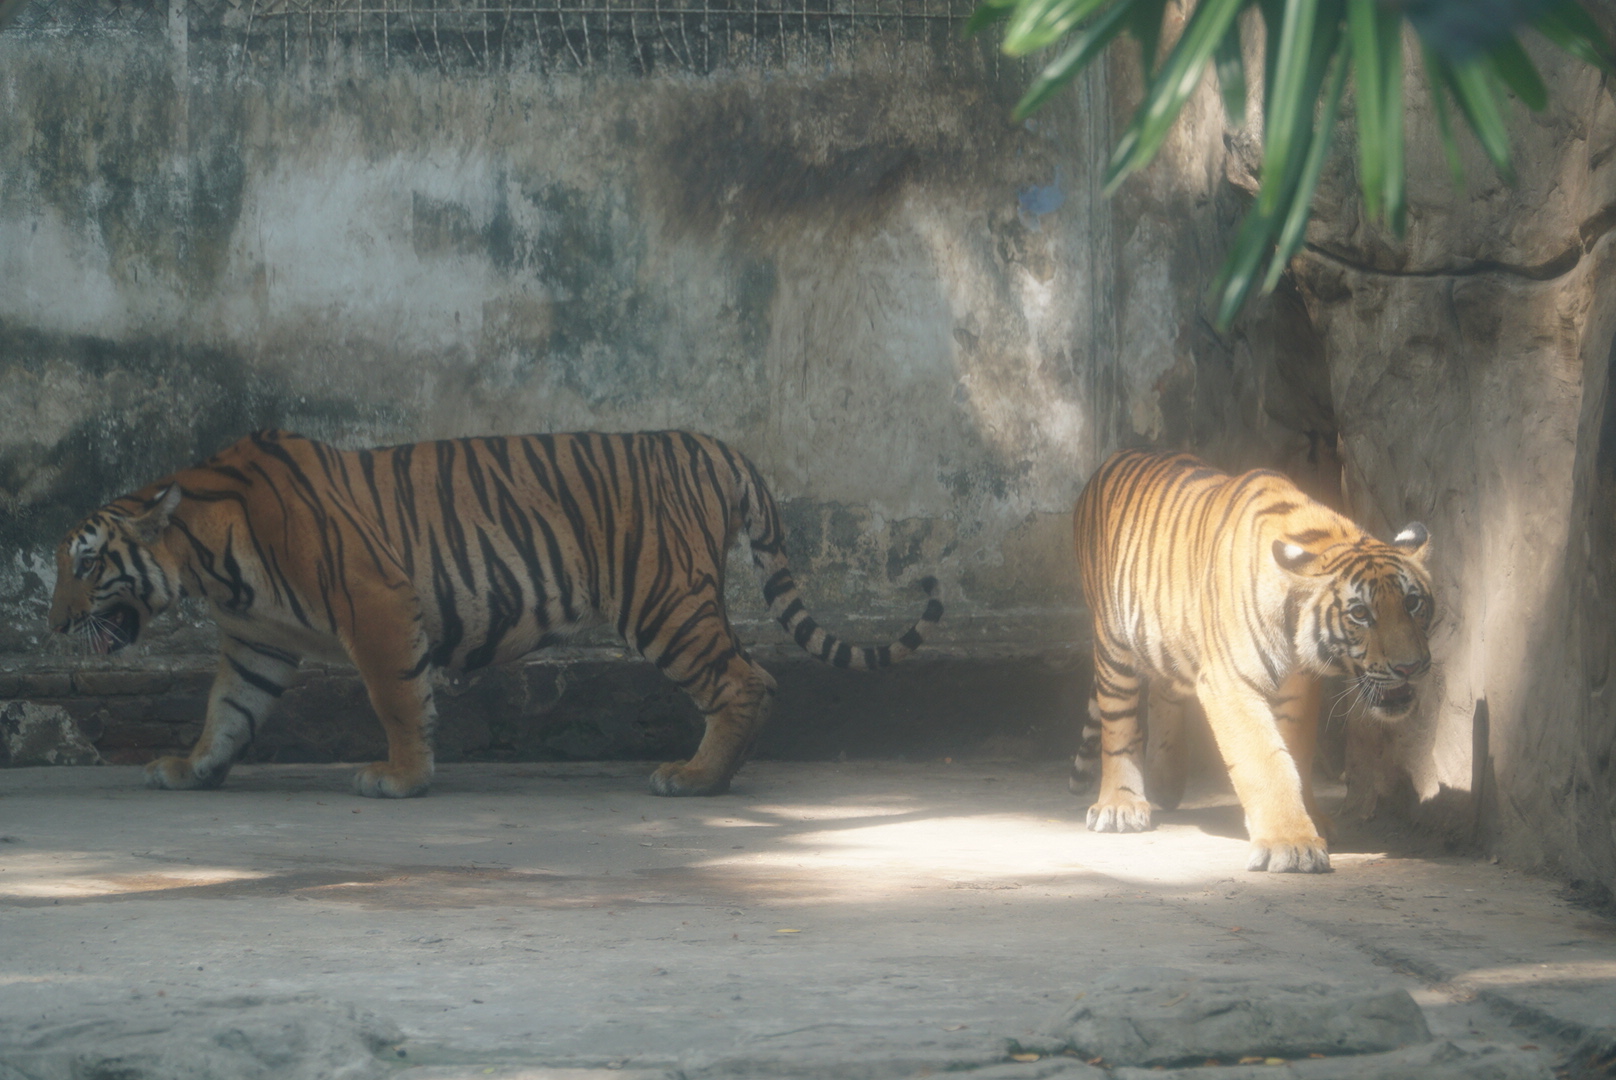 Gặp lại 2 hổ con Bình - Dương ở Thảo Cầm Viên Sài Gòn ngày ‘thôi nôi’- Ảnh 4.